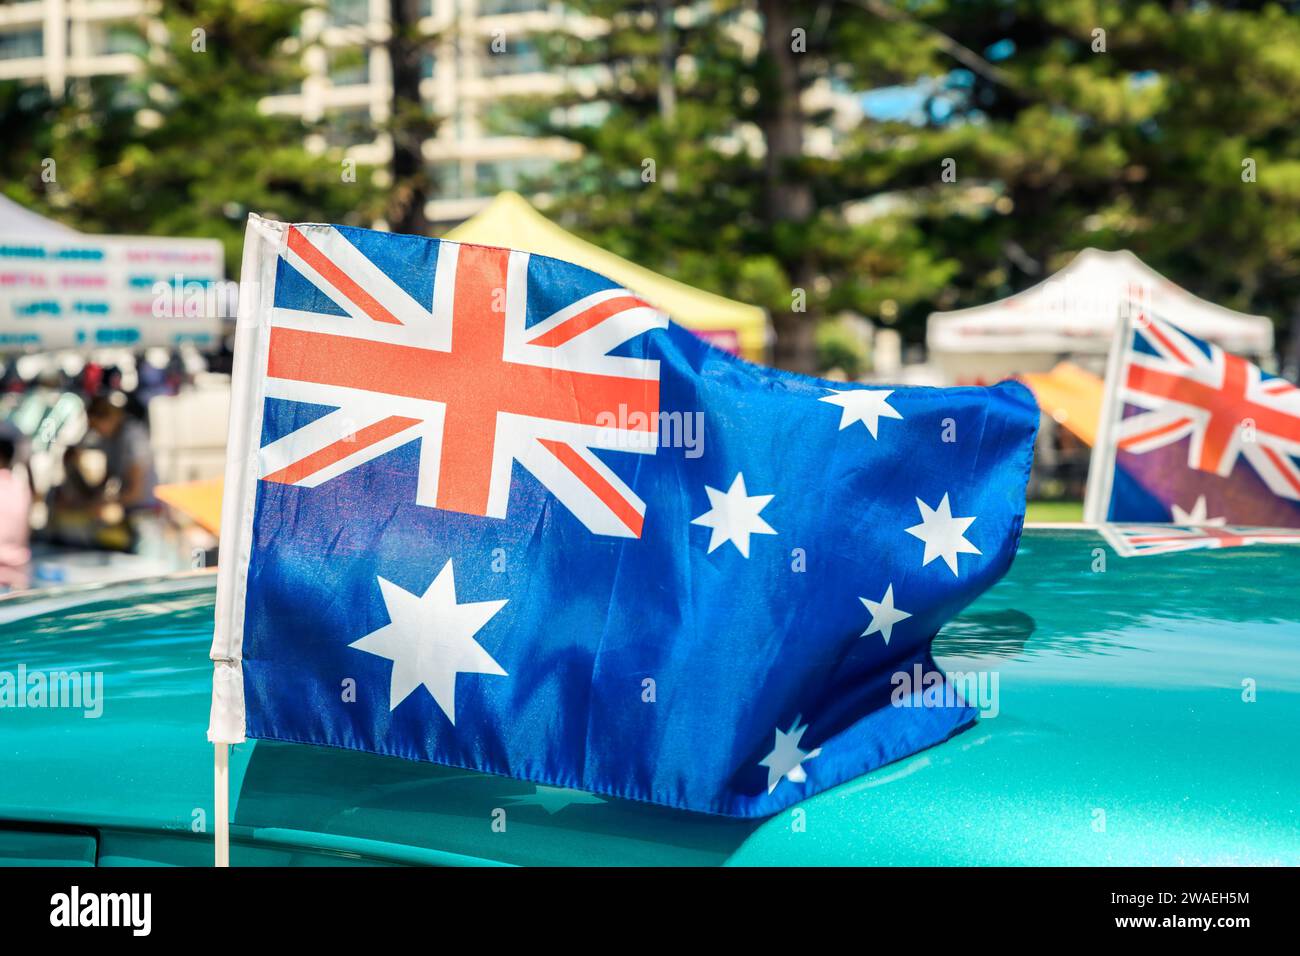 Die Flagge Australiens wurde während des Australientags am Auto befestigt Stockfoto